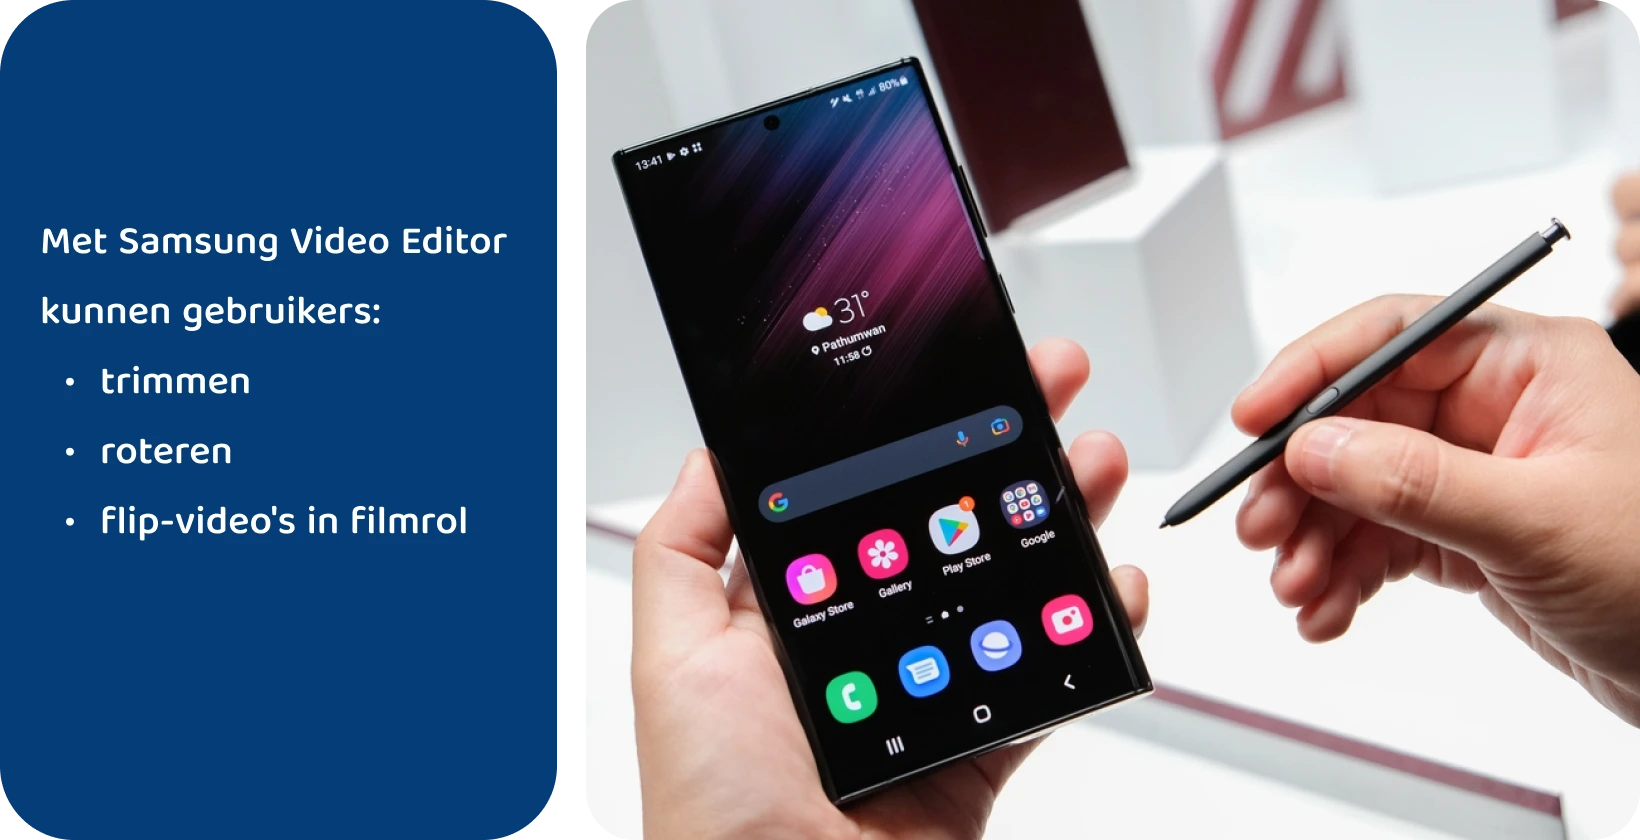 Houd het Samsung Note-apparaat in de hand met de S Pen, klaar om een video op het scherm te bewerken en er tekst aan toe te voegen.